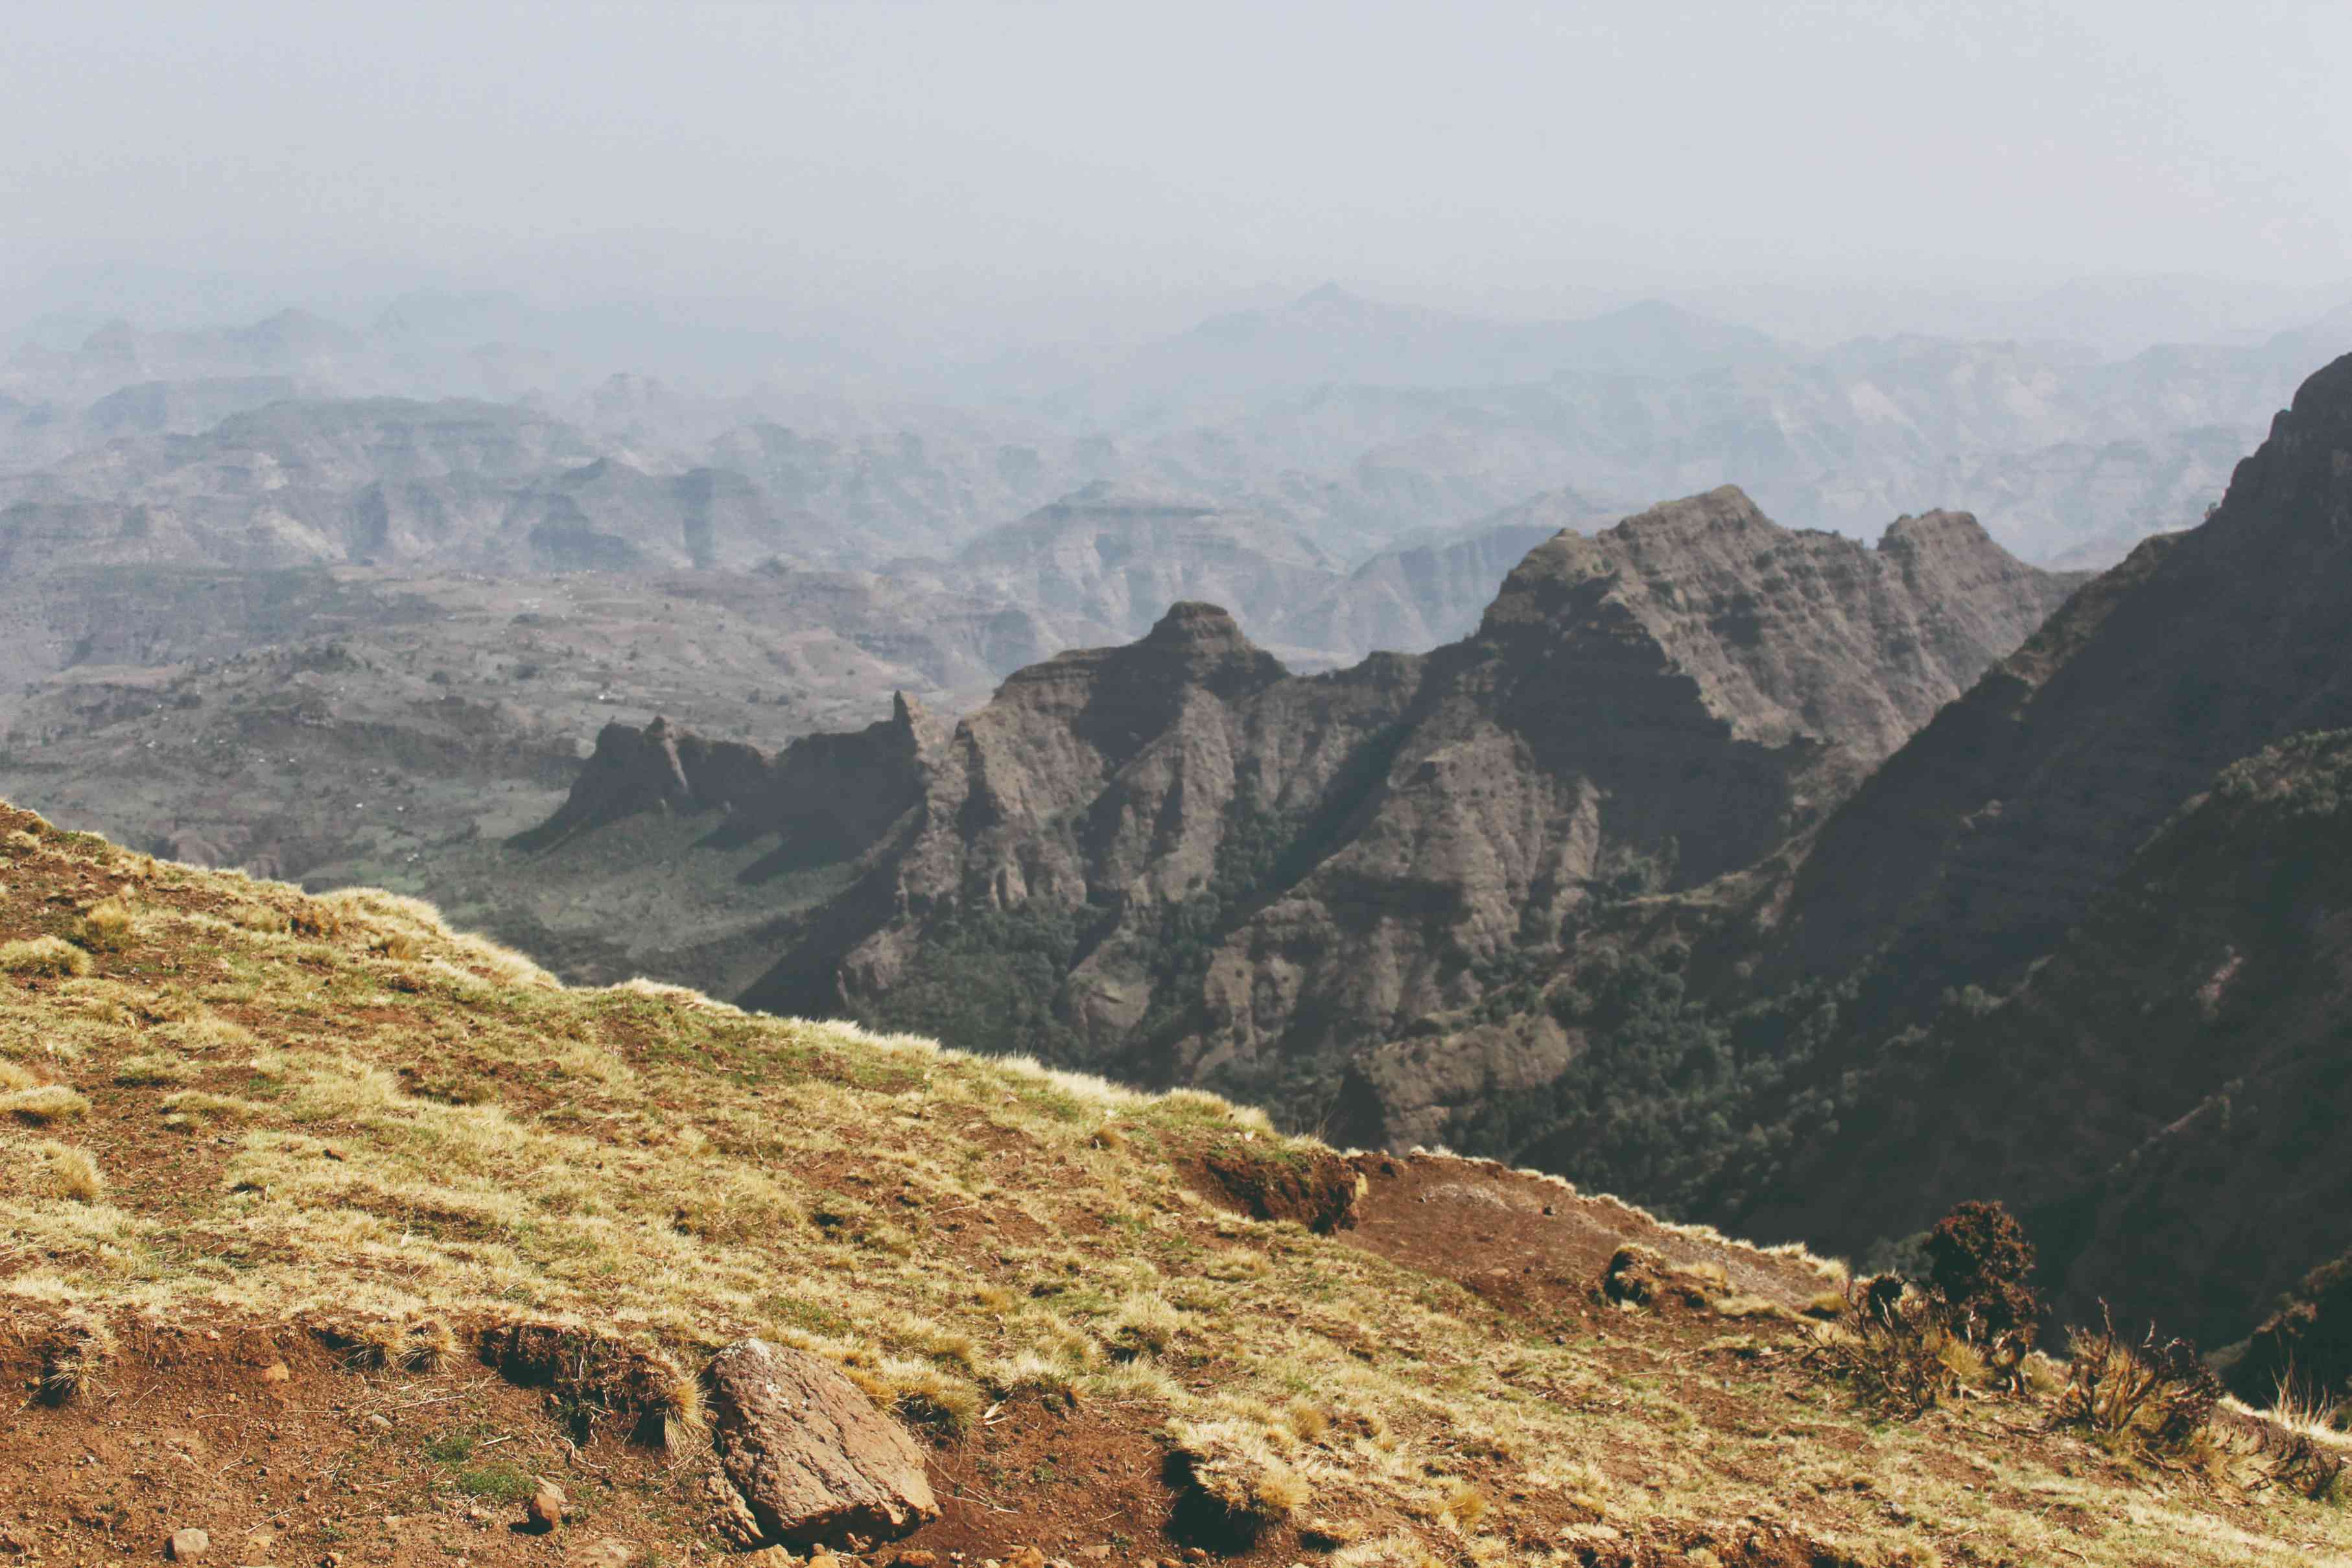 Les plateaux majestueux du massif du Simien offrent des panoramas grandioses.